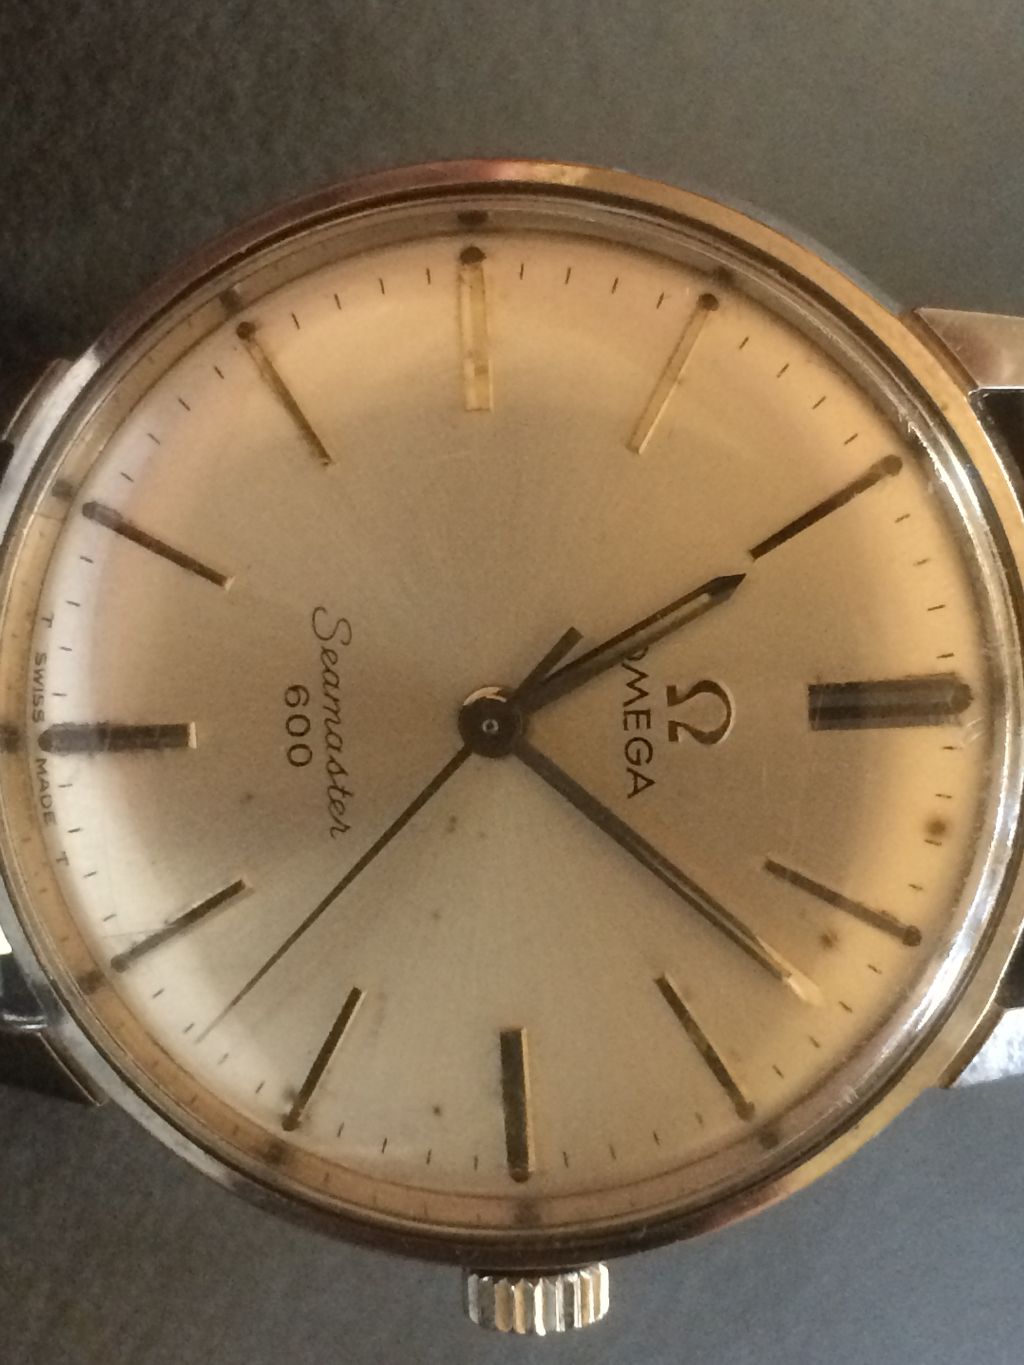 omega watch worth